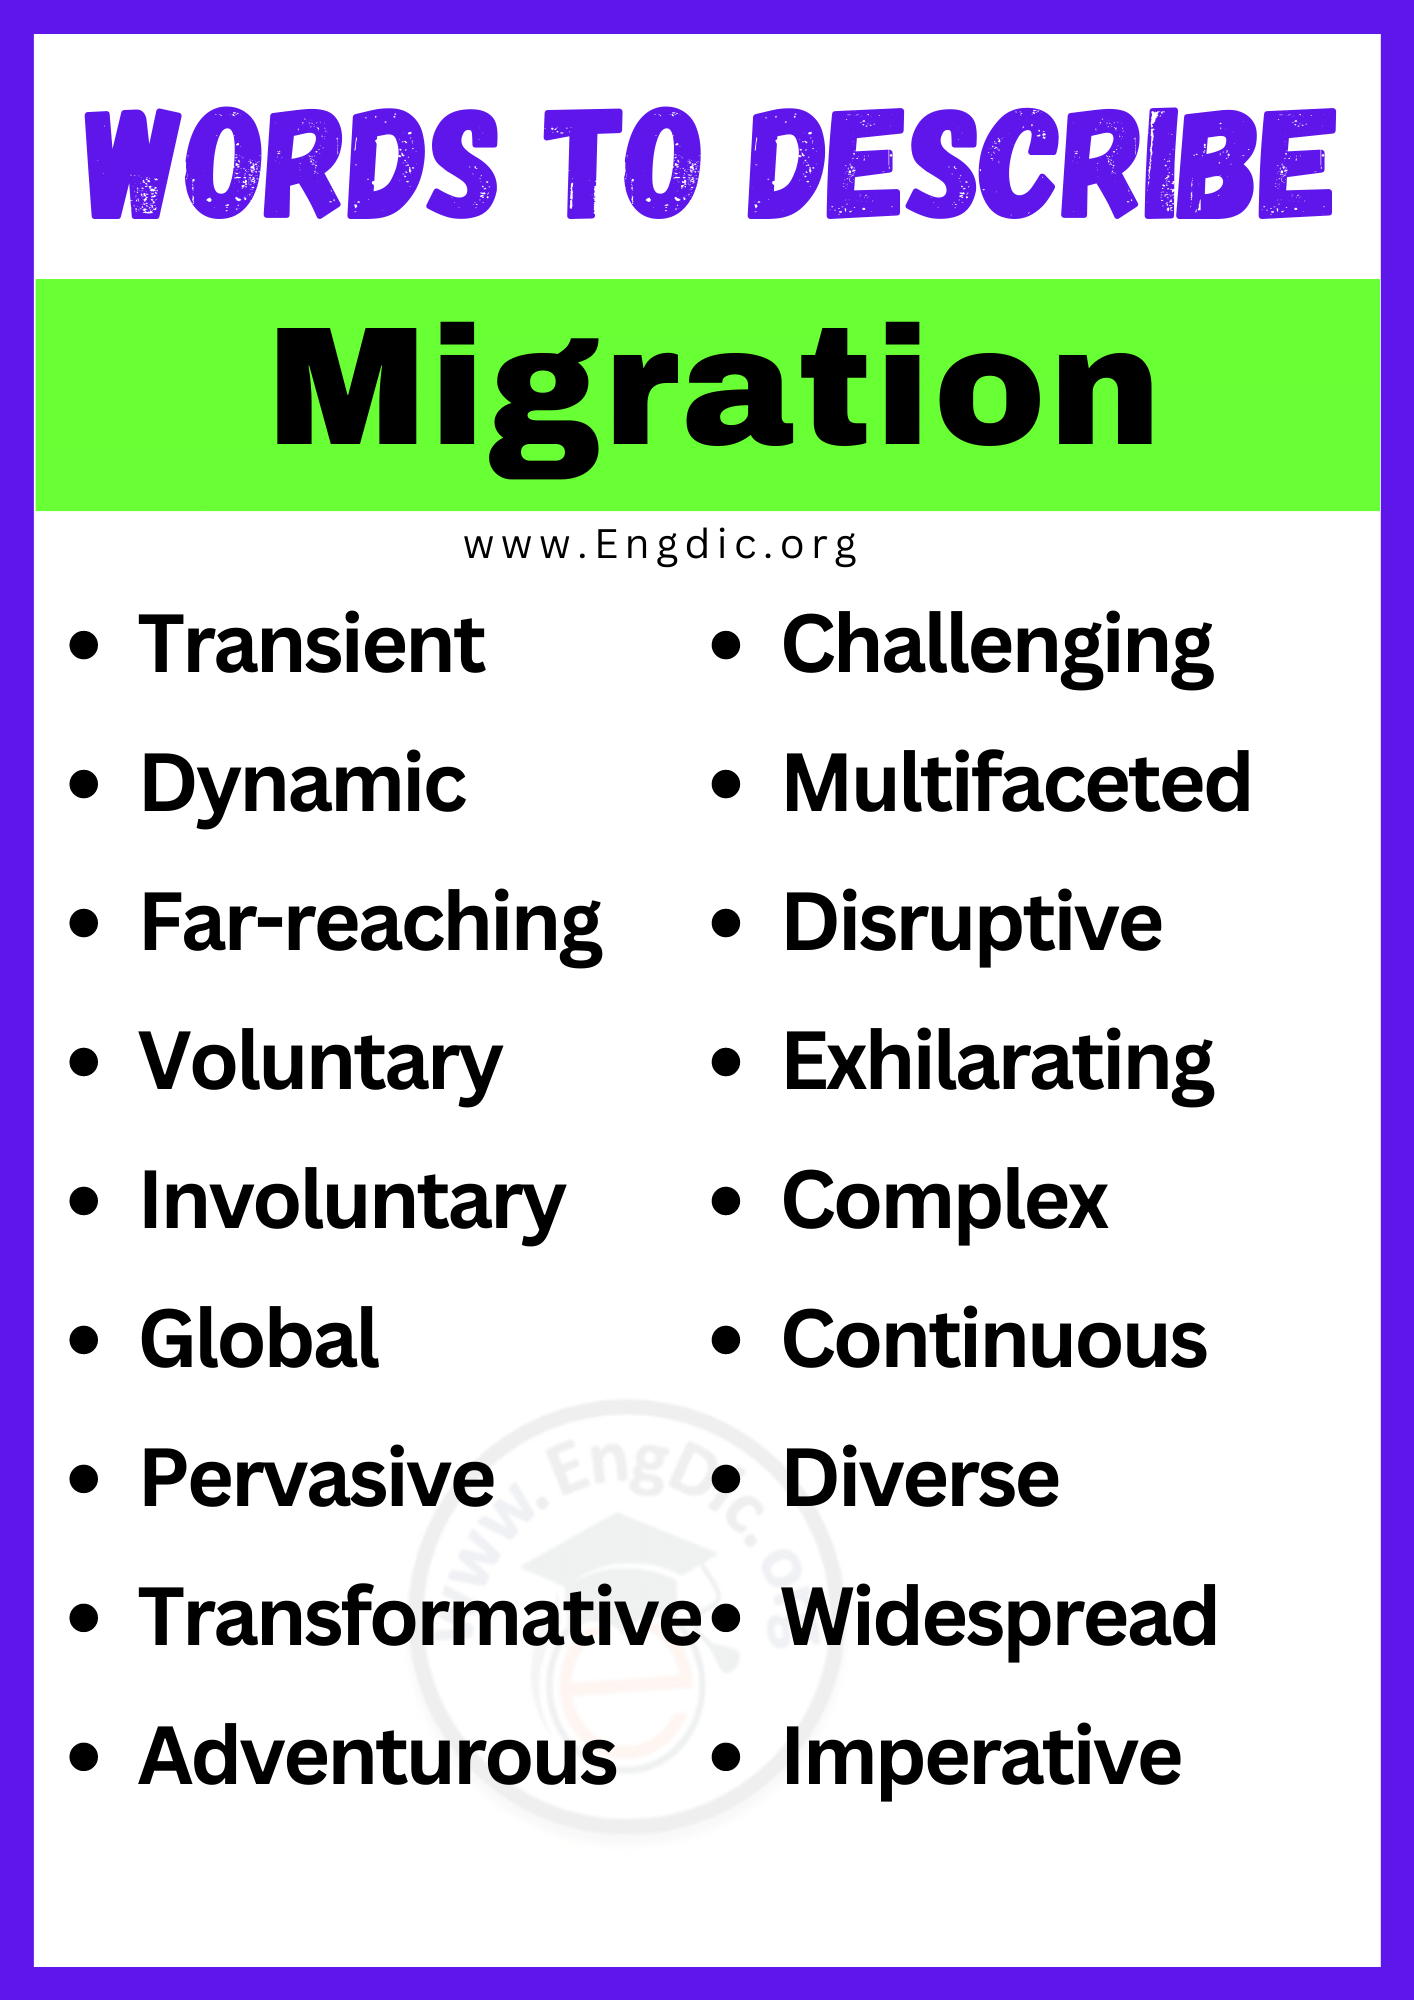 Words to Describe Migration